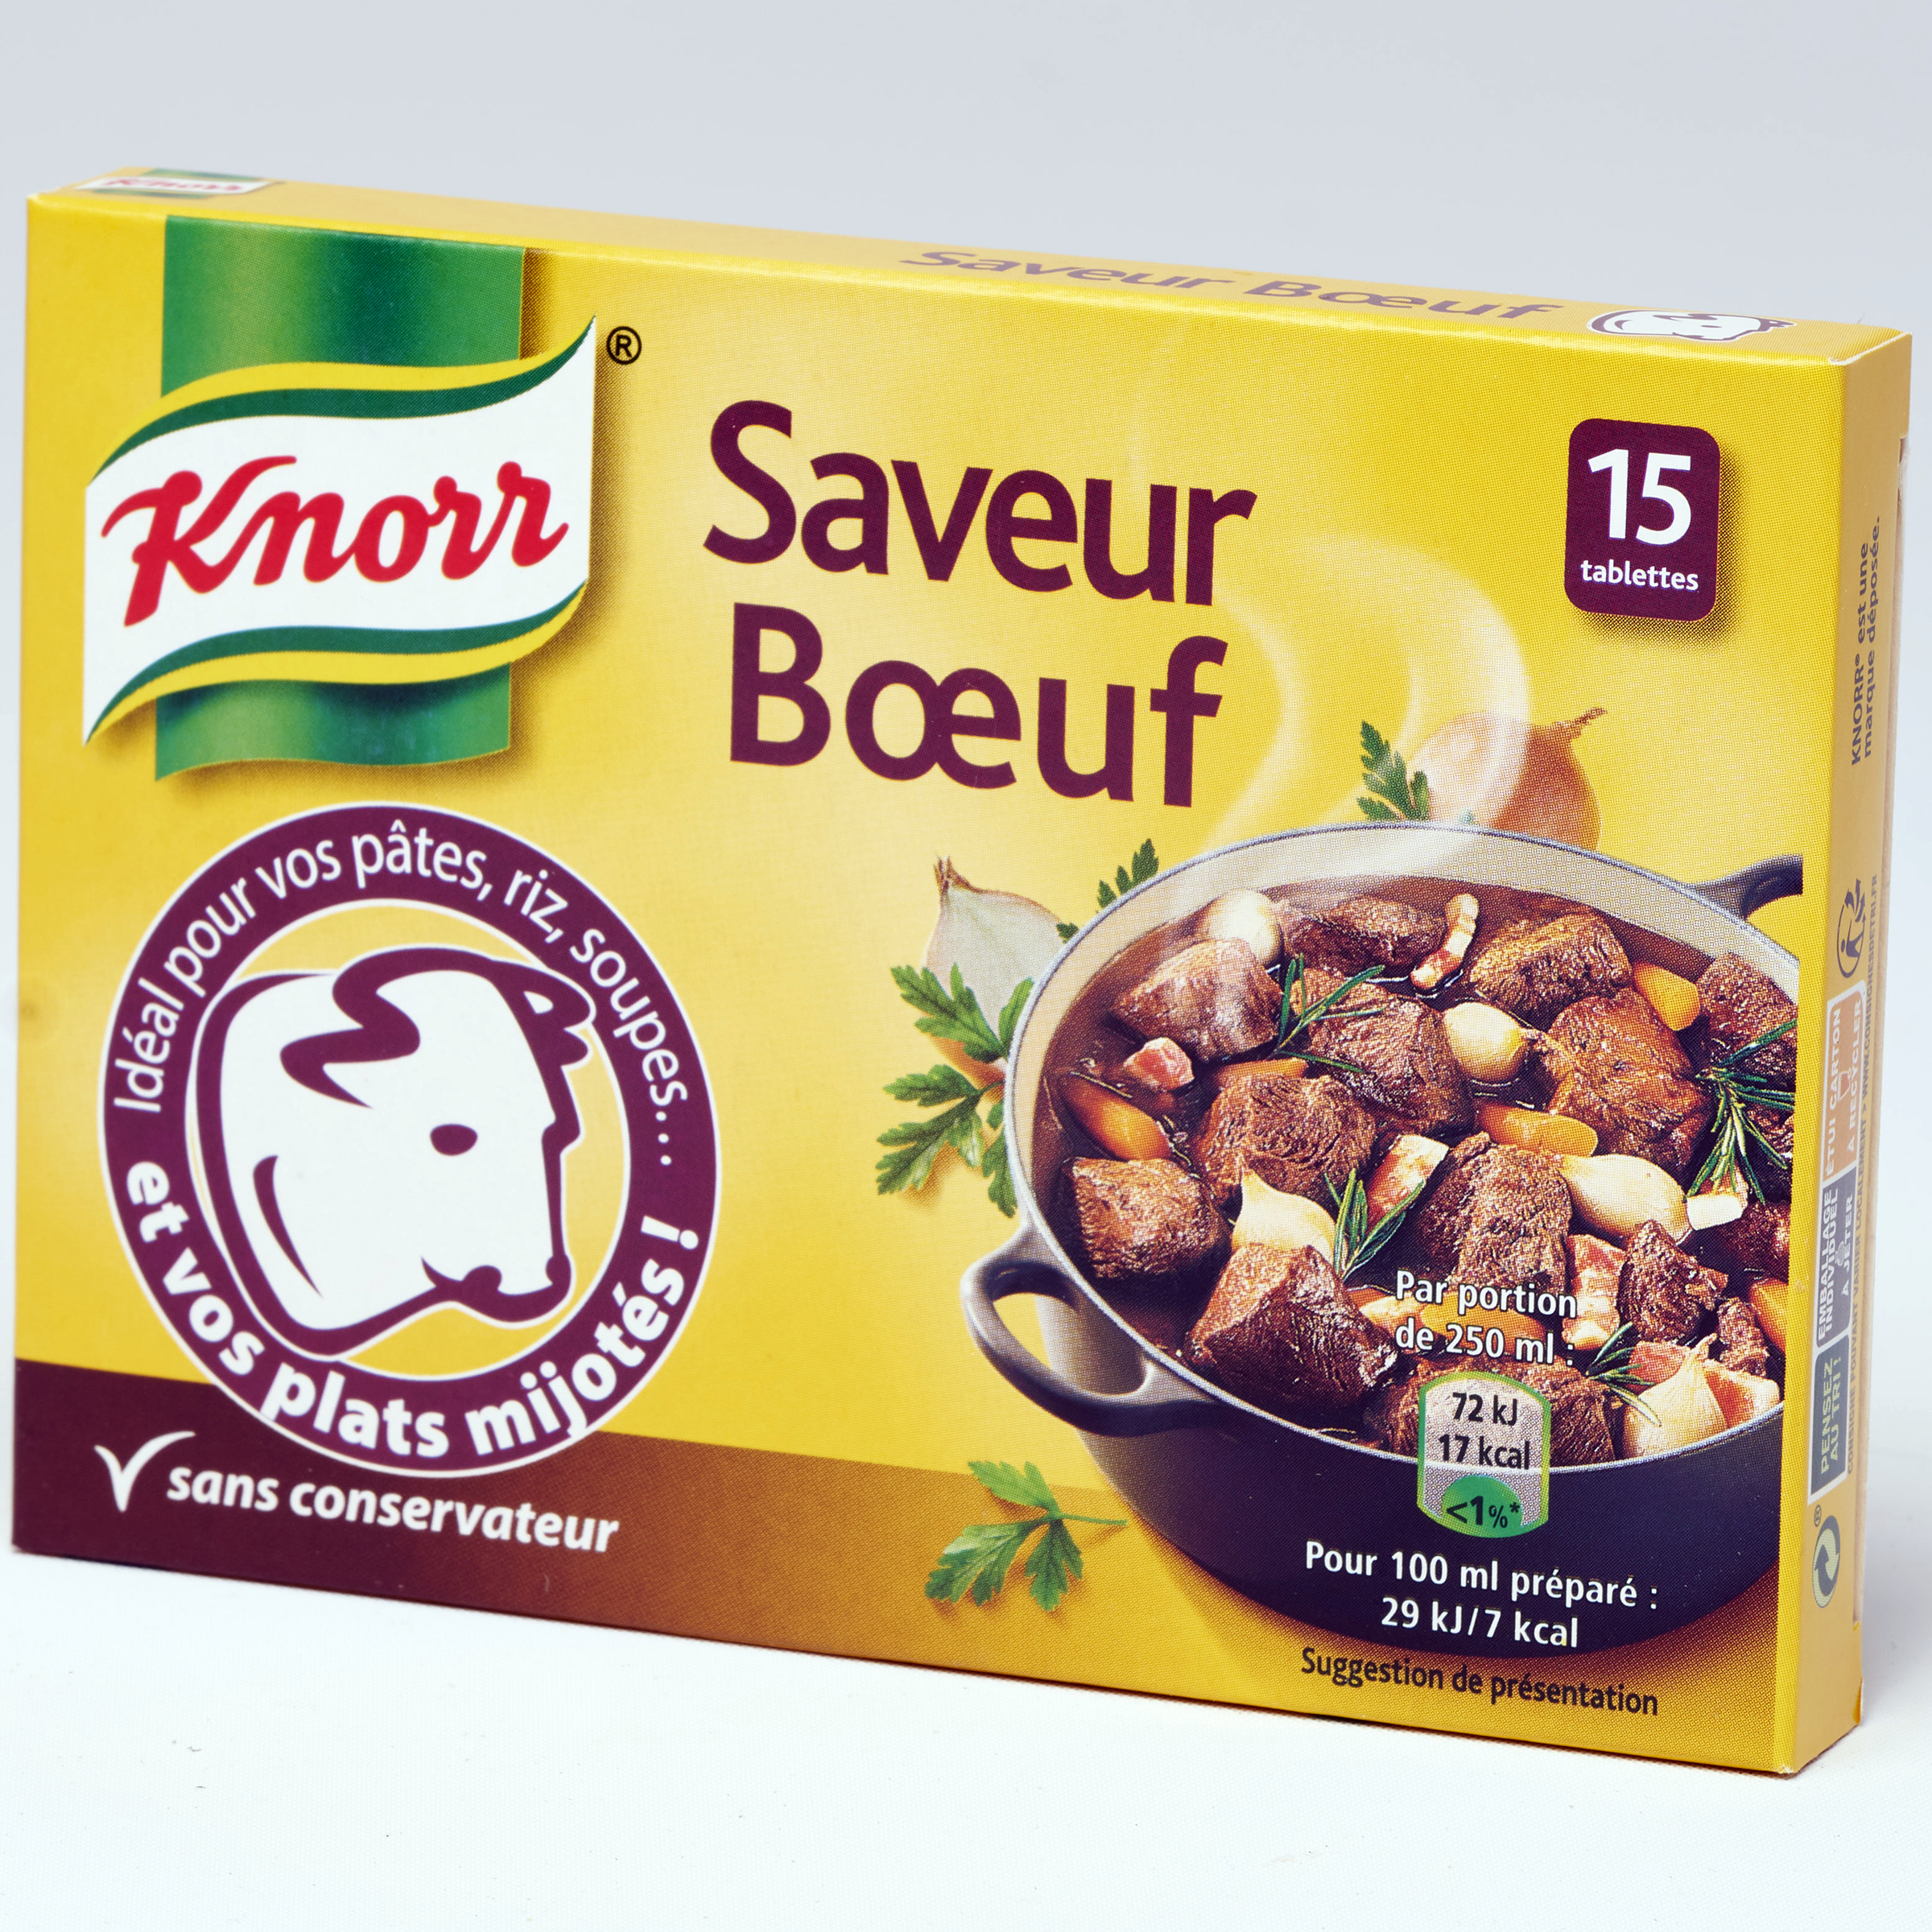 Knorr Saveur bœuf - 